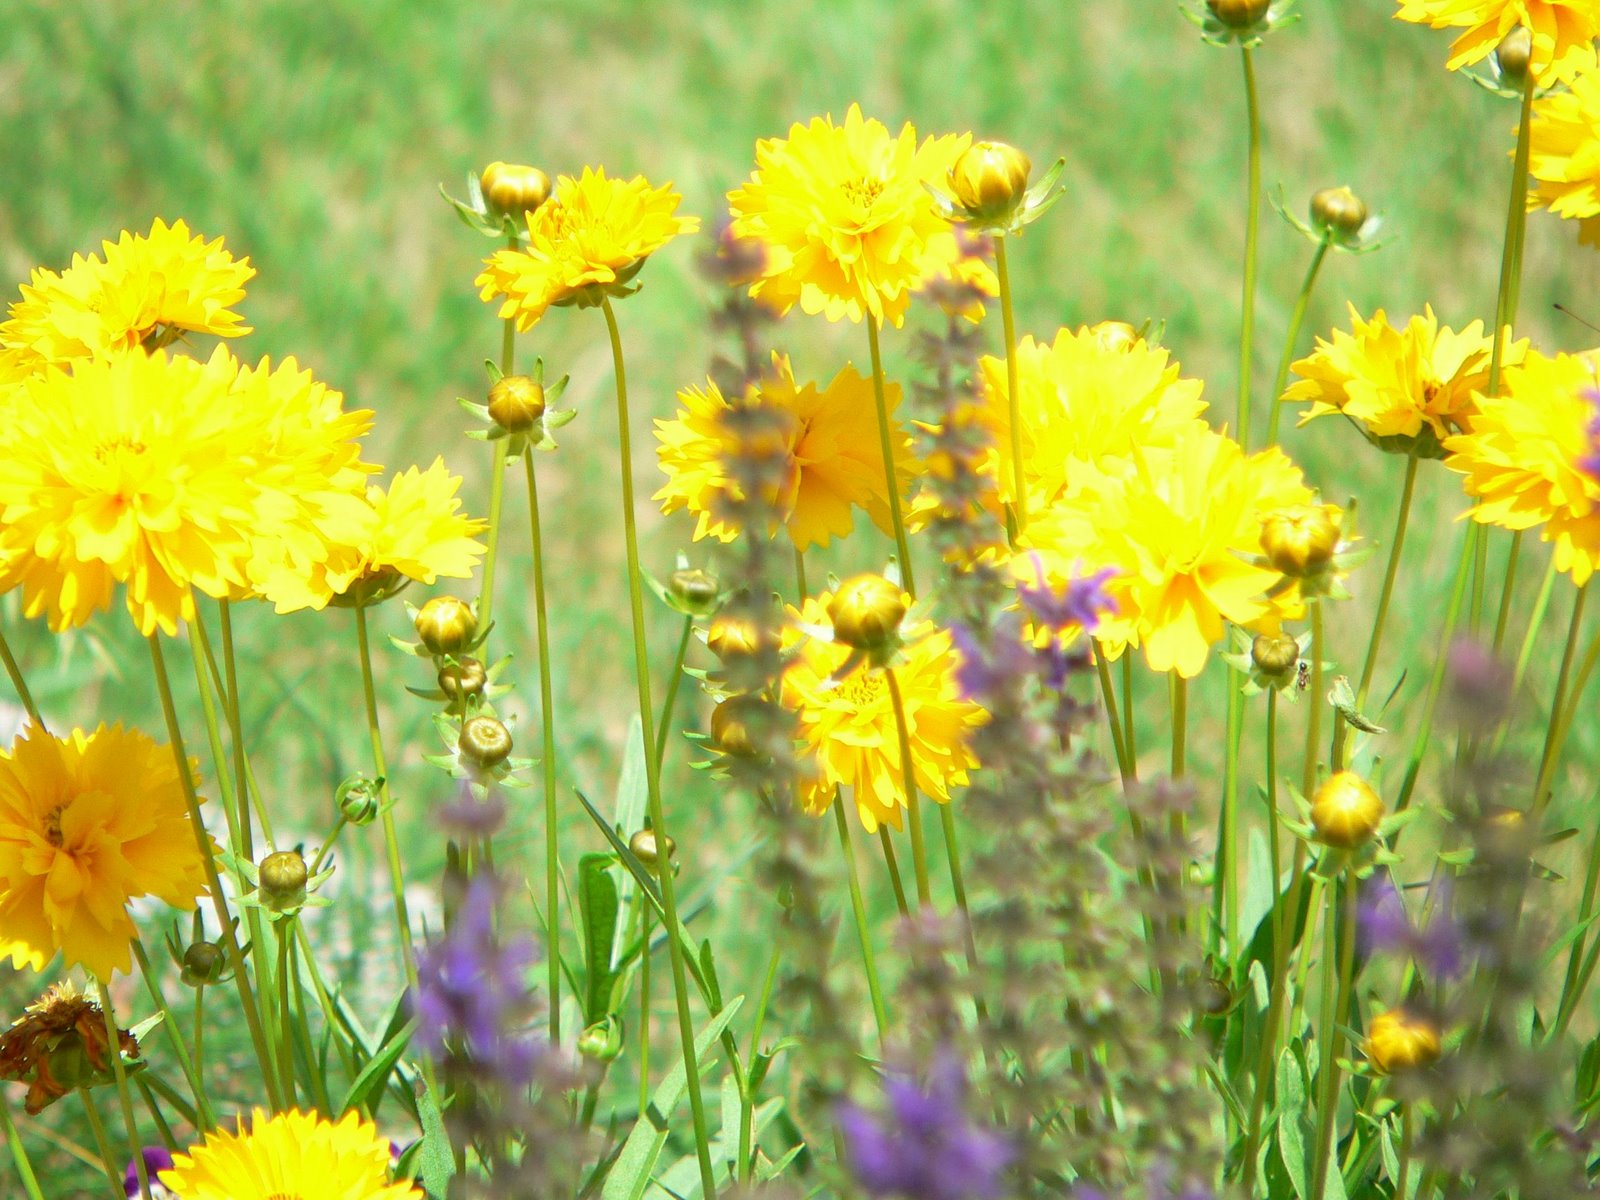 [yellowflowers.jpg]